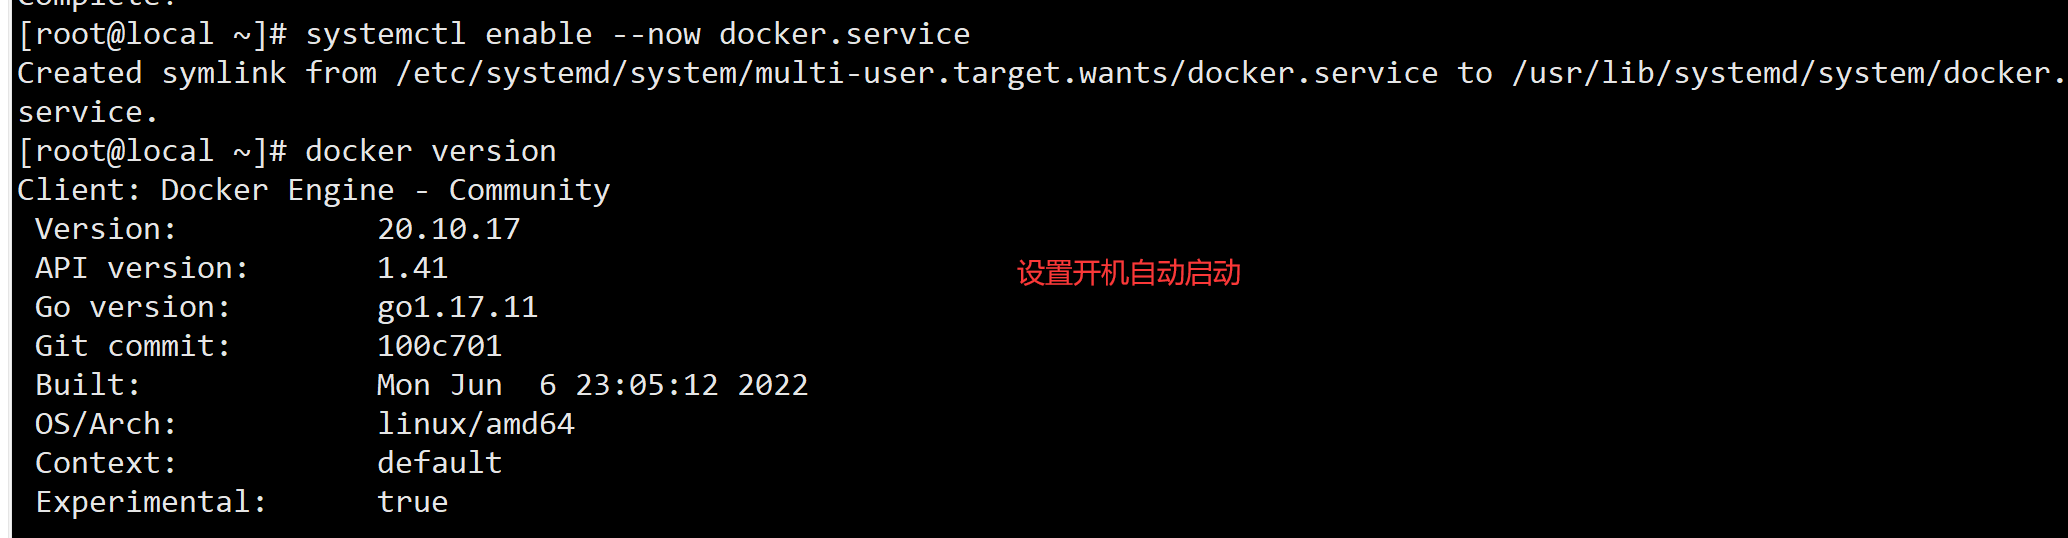 Docker简介与安装